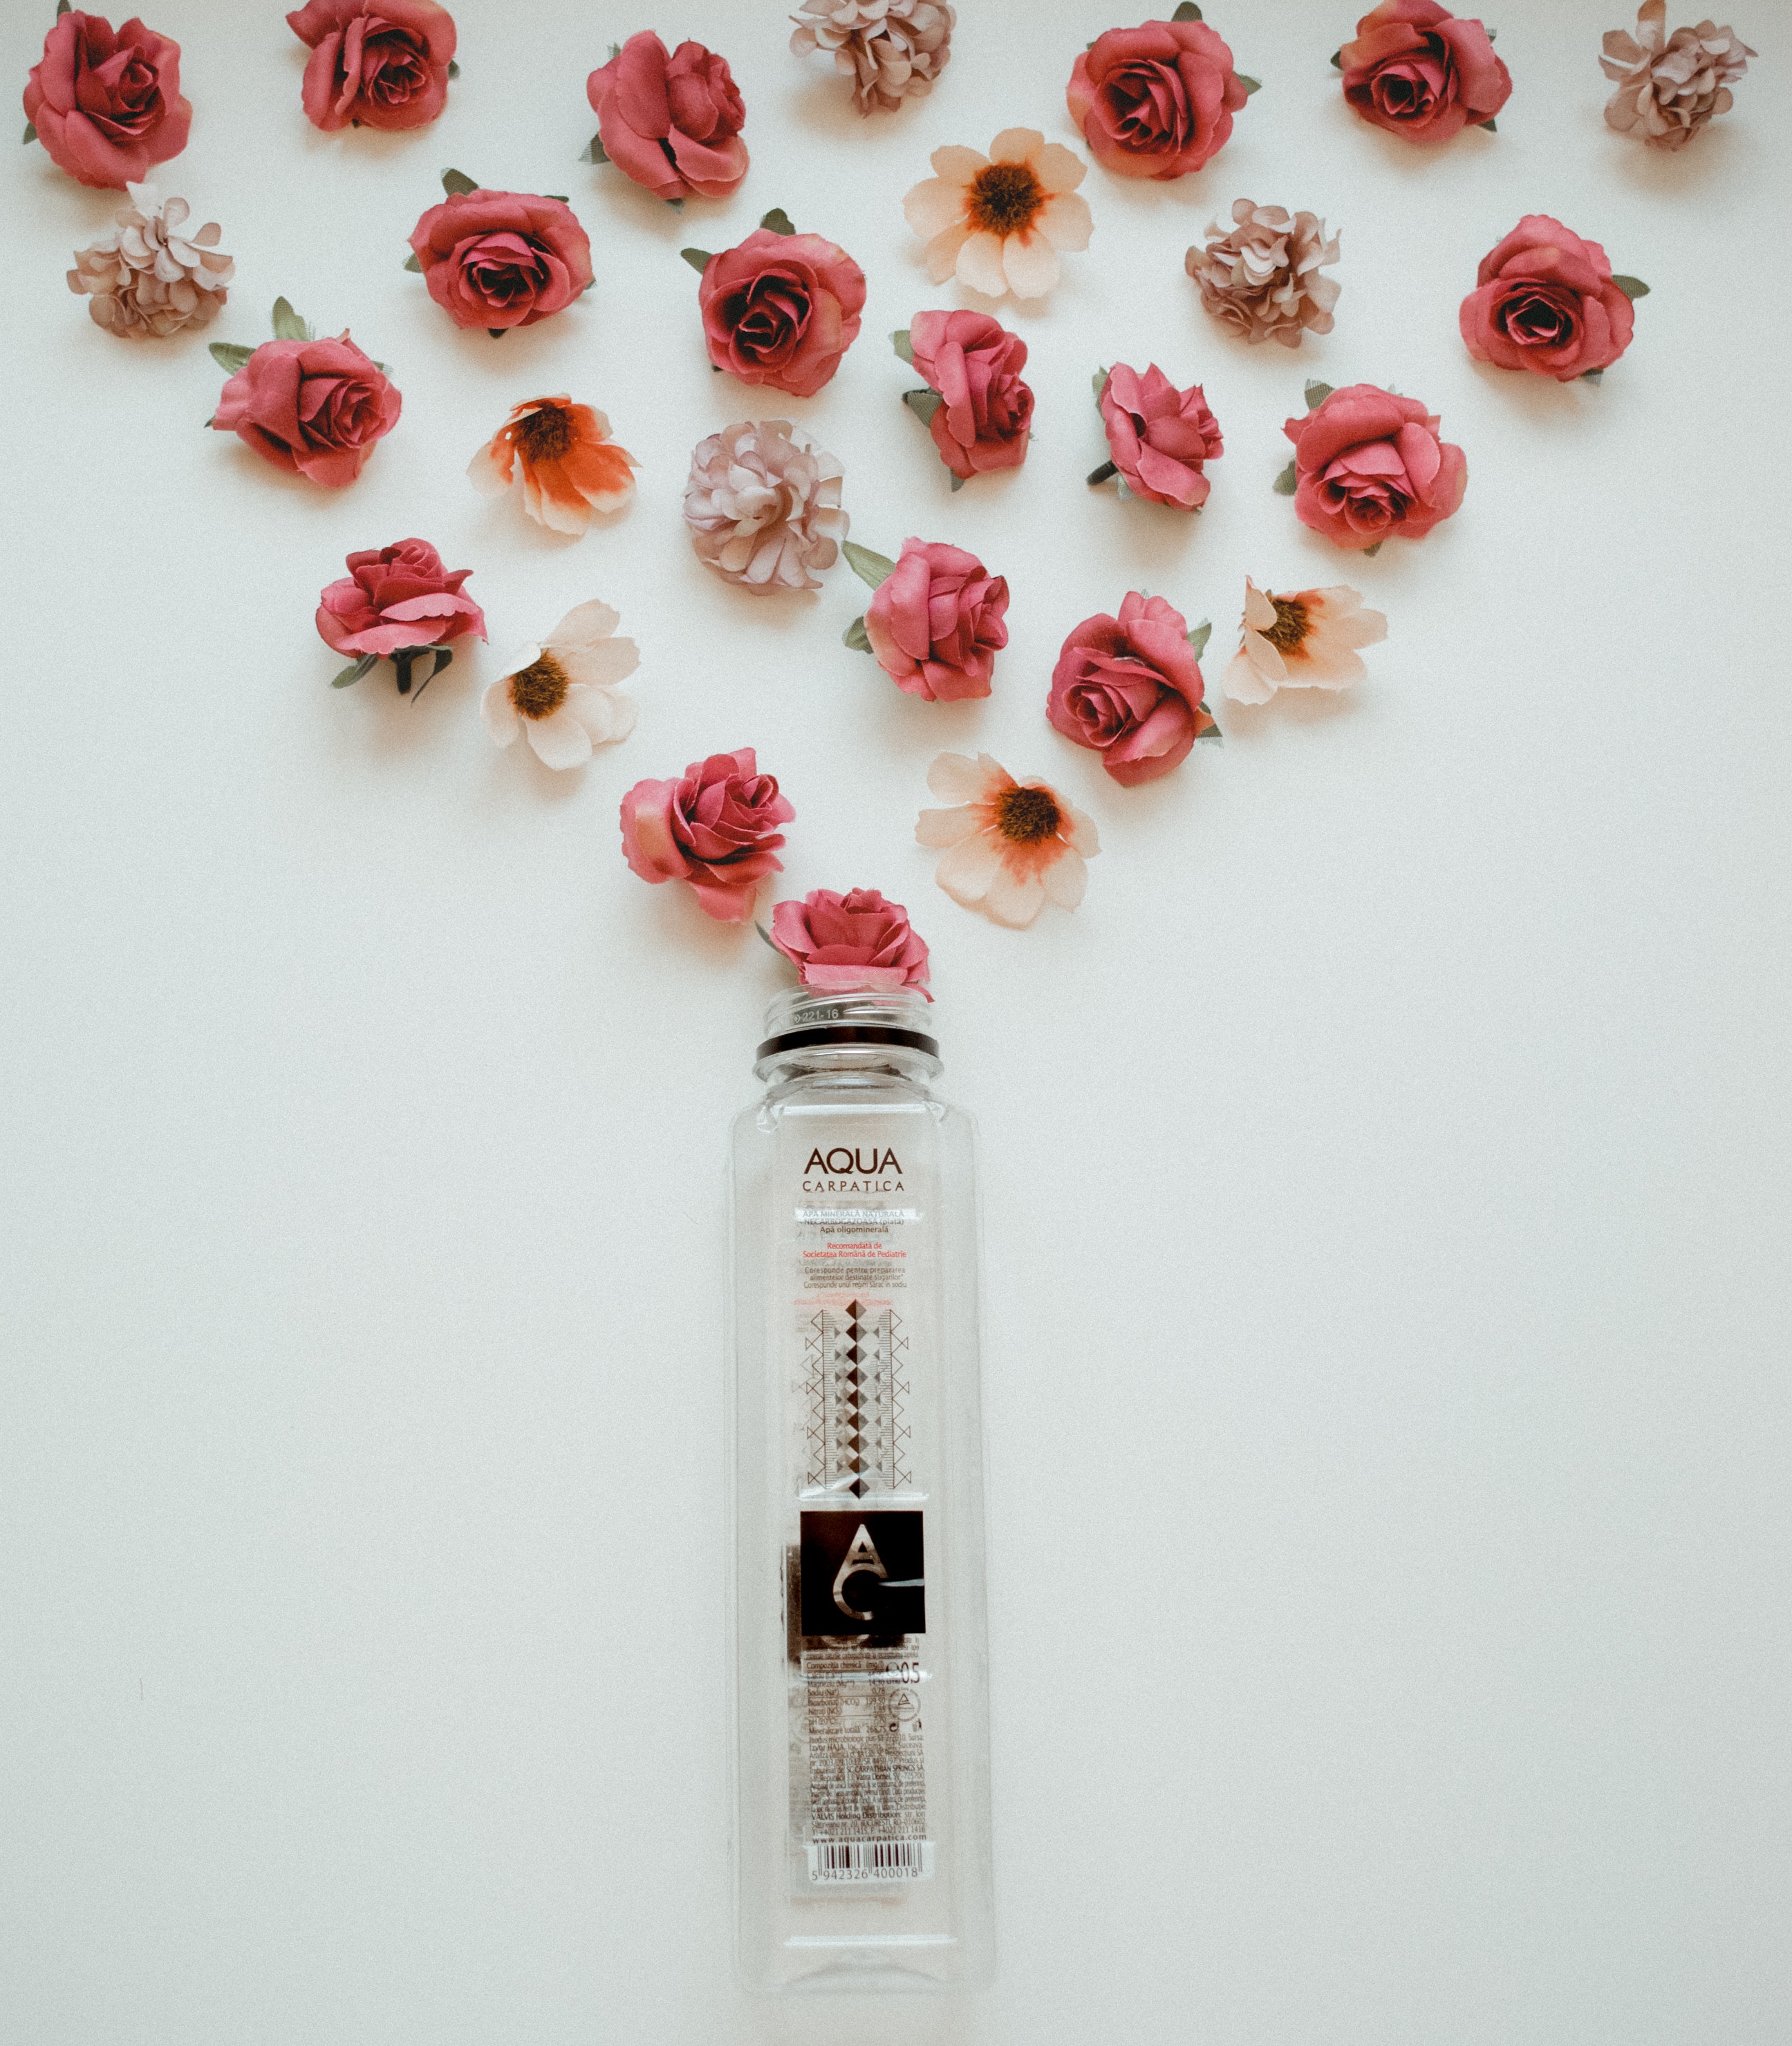 Cómo hacer perfume de rosas casero? | Paso a Paso elaboración